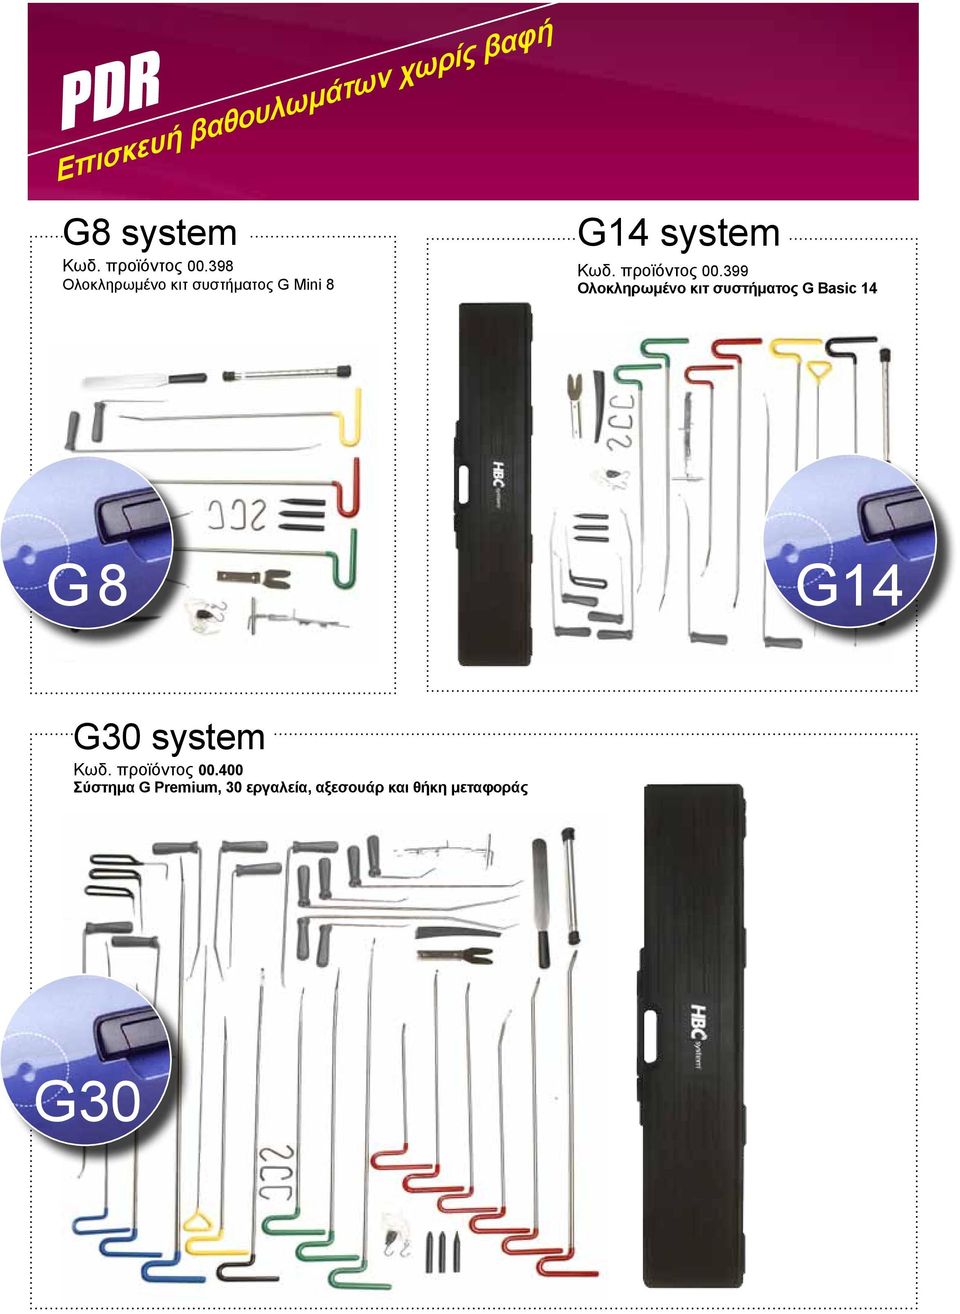 399 Ολοκληρωμένο κιτ συστήματος G Basic 14 G8 G14 G30 system Κωδ.